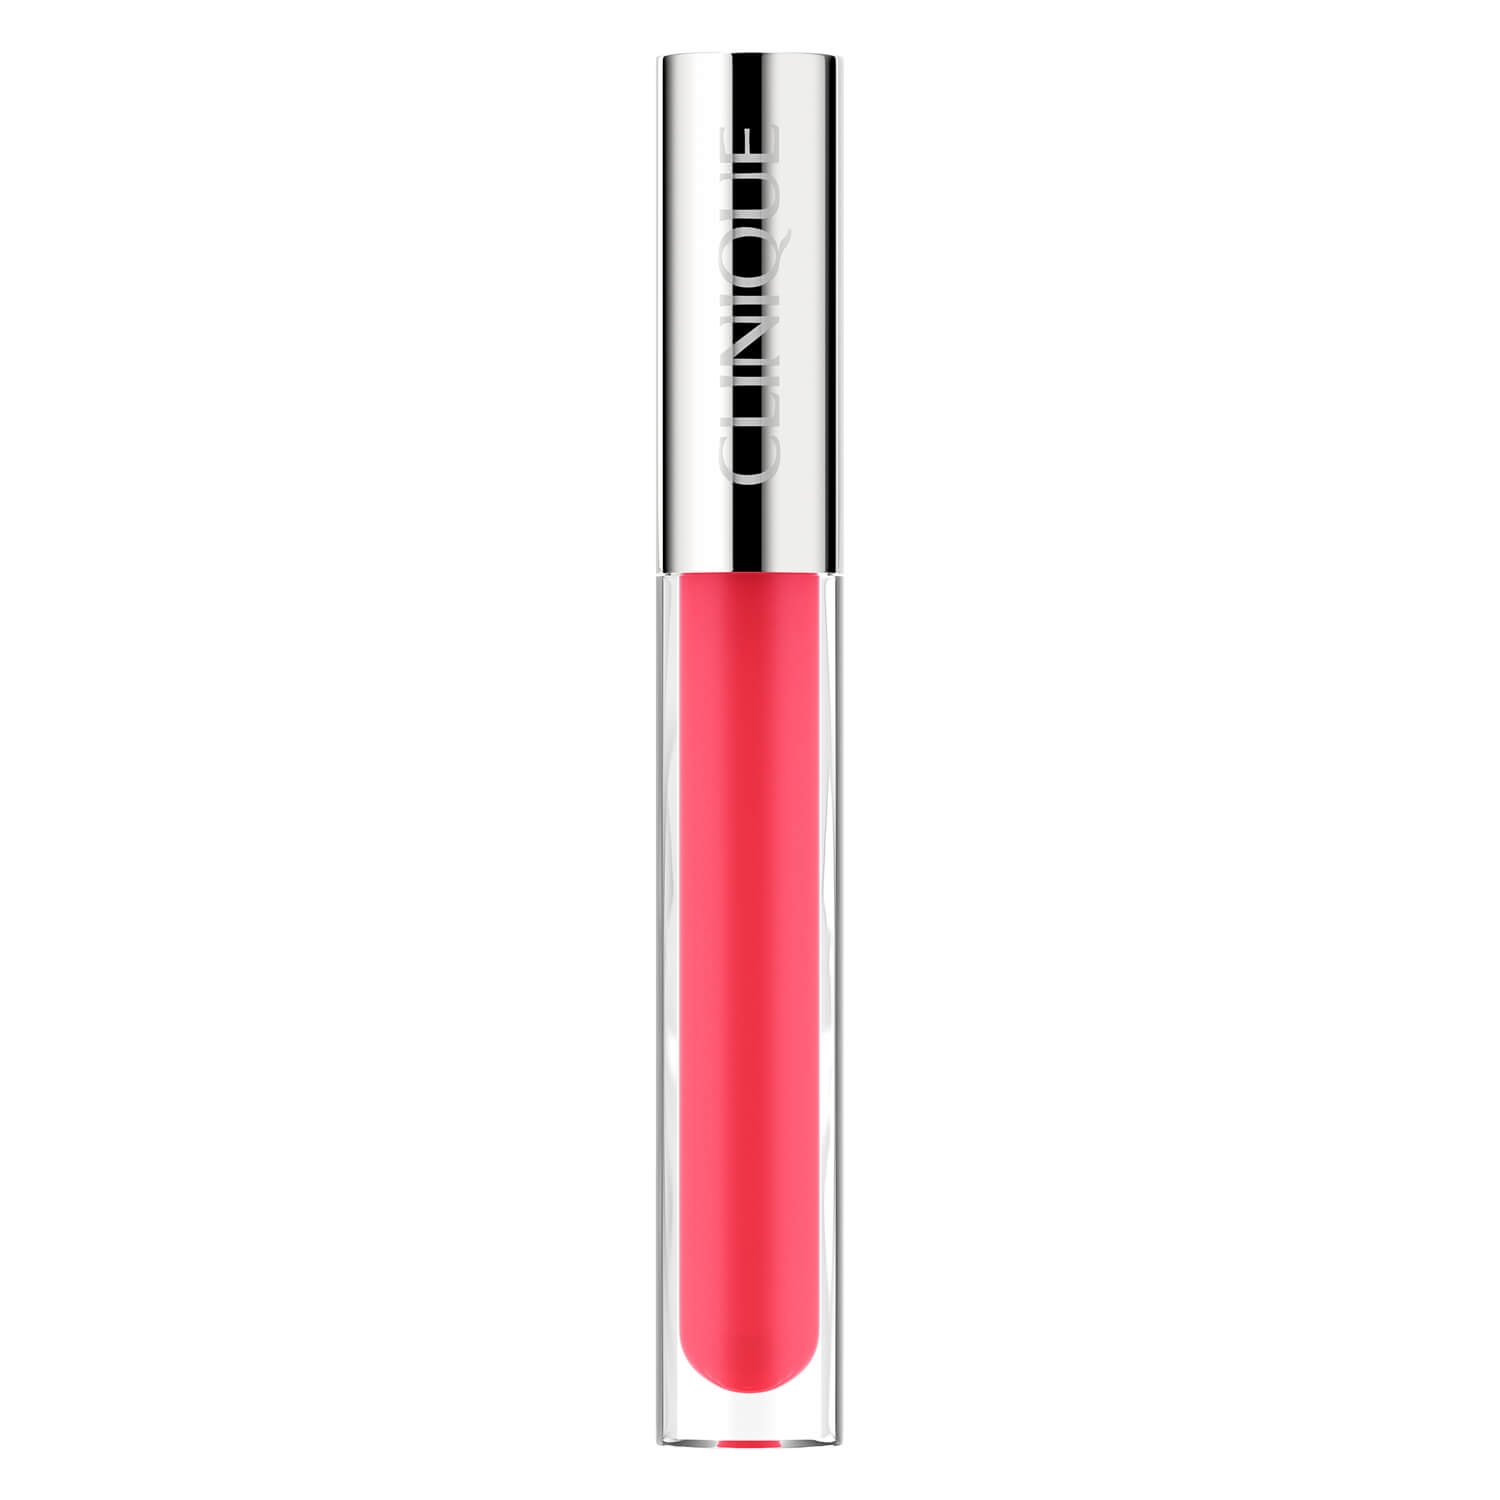 Produktbild von Clinique Lips - Pop Plush Creamy Lip Gloss 08 Strawberry Pop